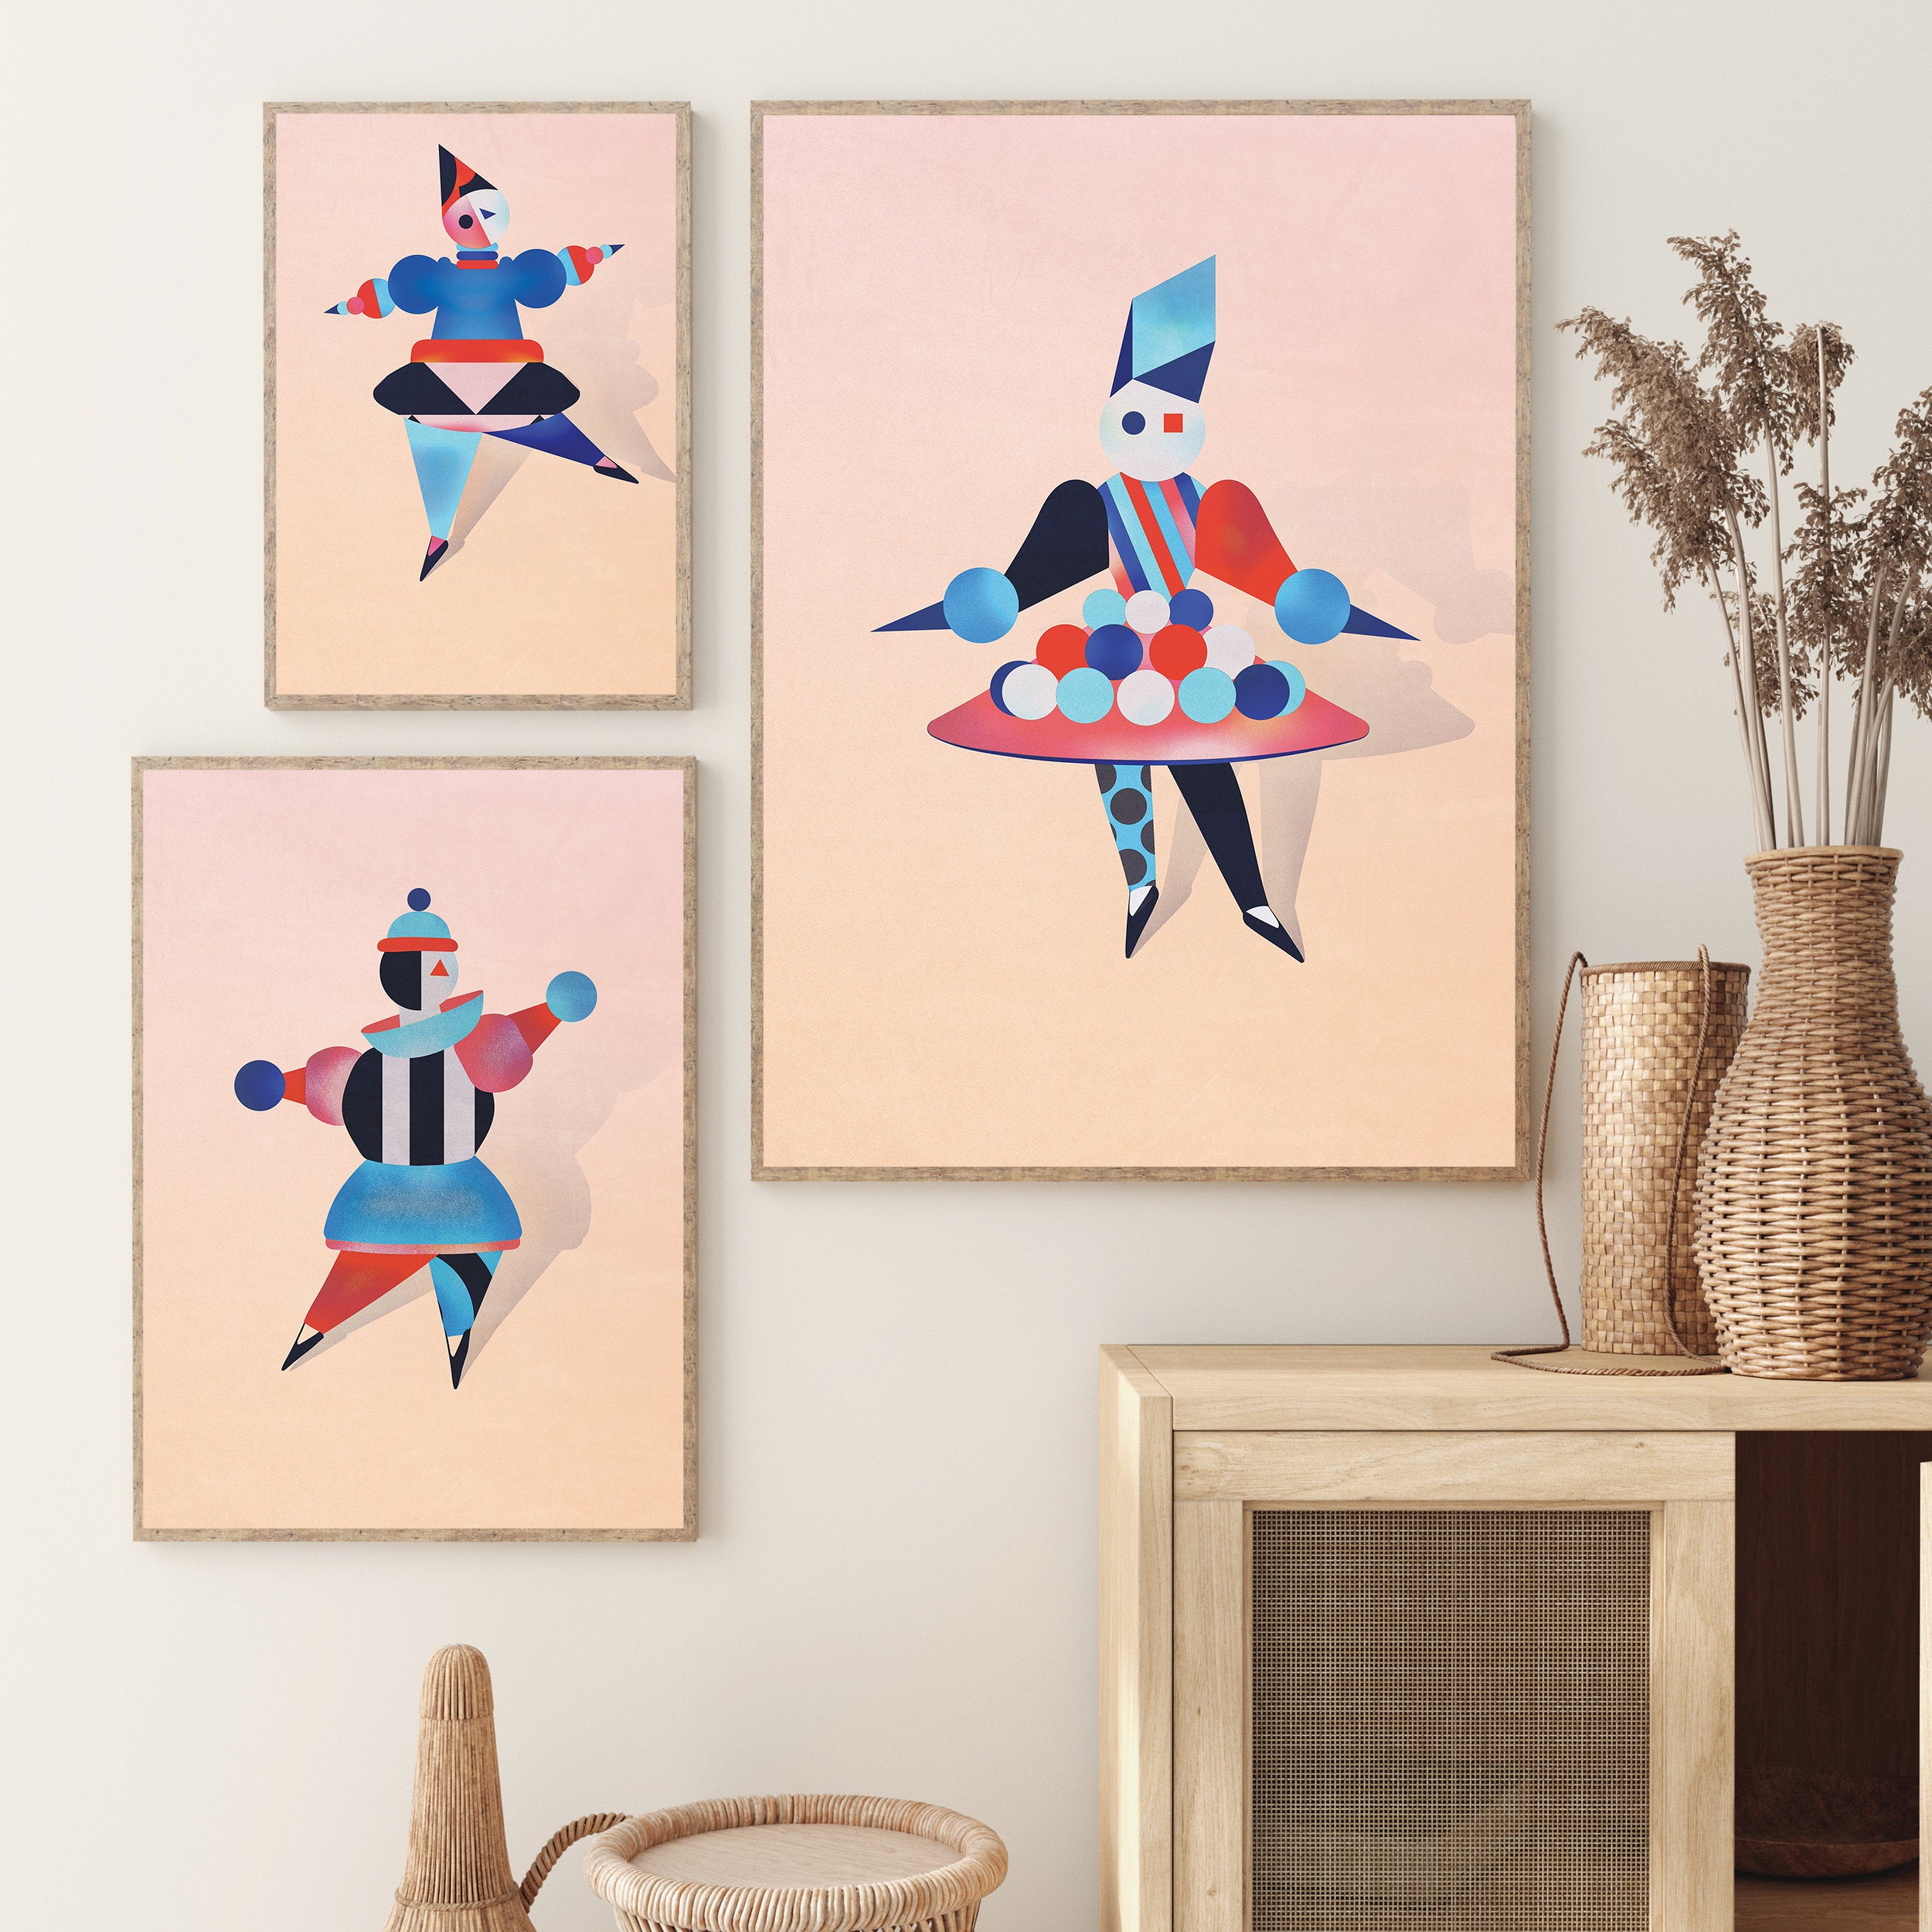 3 Piece Wall Art Set - Bauhaus Style Giclee Ballet Art Prints - Geometric Wall Art Decor, Minimalist Modern Art Gift